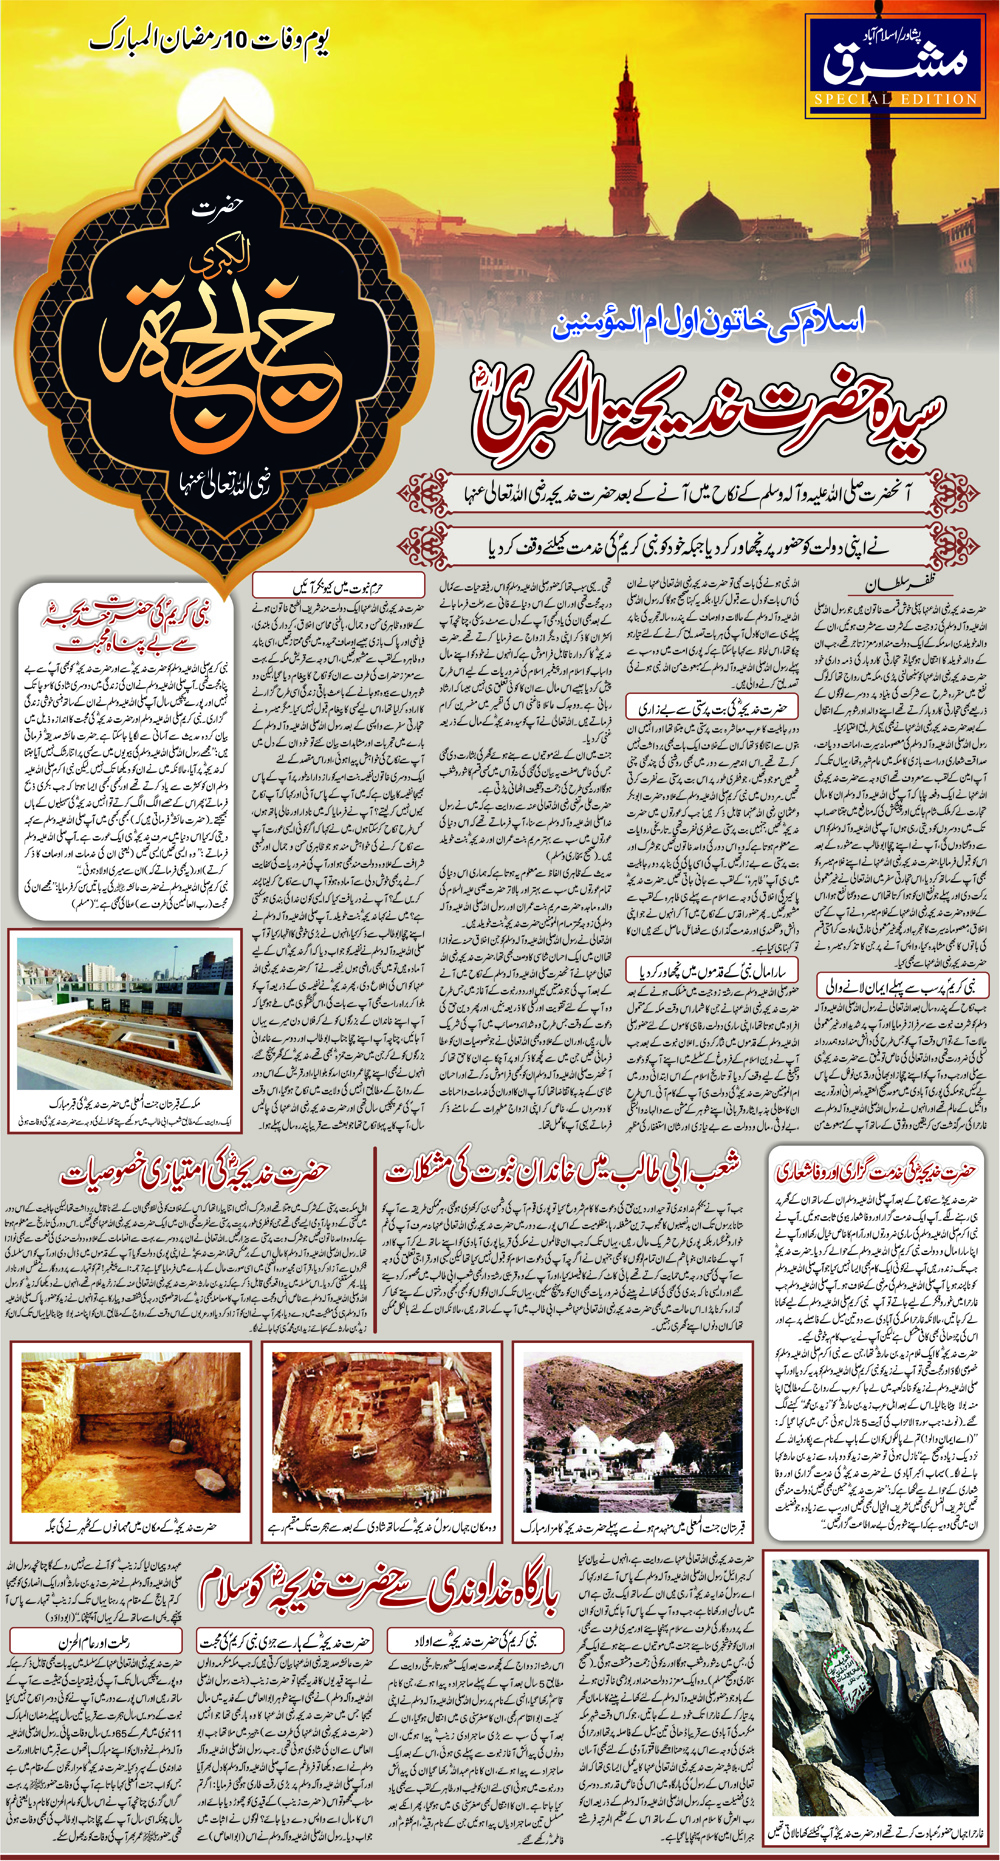 Daily Mashriq Page 1 Date